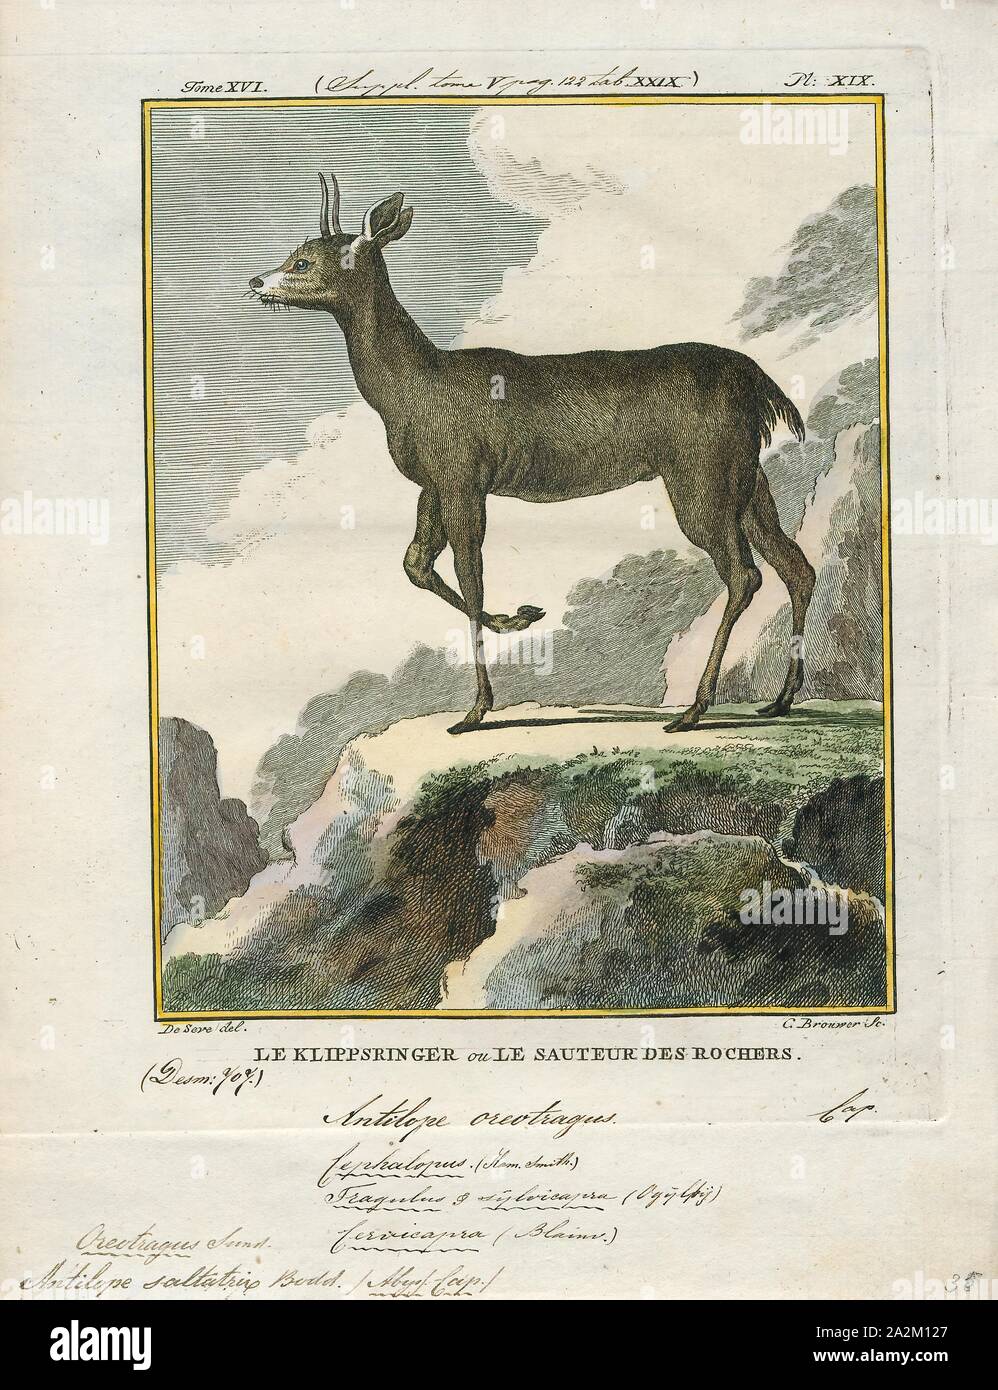 Antilope saltatrix, Stampa, Blackbuck, blackbuck (Antilope cervicapra), noto anche come antilope dell'India, è un antilope trovato in India, Nepal e Pakistan. Il blackbuck è la suola extant stati del genere Antilope. La specie è stata descritta e dato il suo nome binomiale da zoologo svedese Carlo Linneo nel 1758. Sono riconosciute due sottospecie. Esso si erge fino a 74-84 cm (29 a 33) in alto alla spalla. I maschi pesano 20-57 kg (44-126 lb), con una media di 38 kg (84 lb). Le femmine sono più leggeri e di peso 20-33 kg (44-73 lb) o 27 kg (60 lb) in media. La lunga e inanellato corna, 35-75 cm Foto Stock